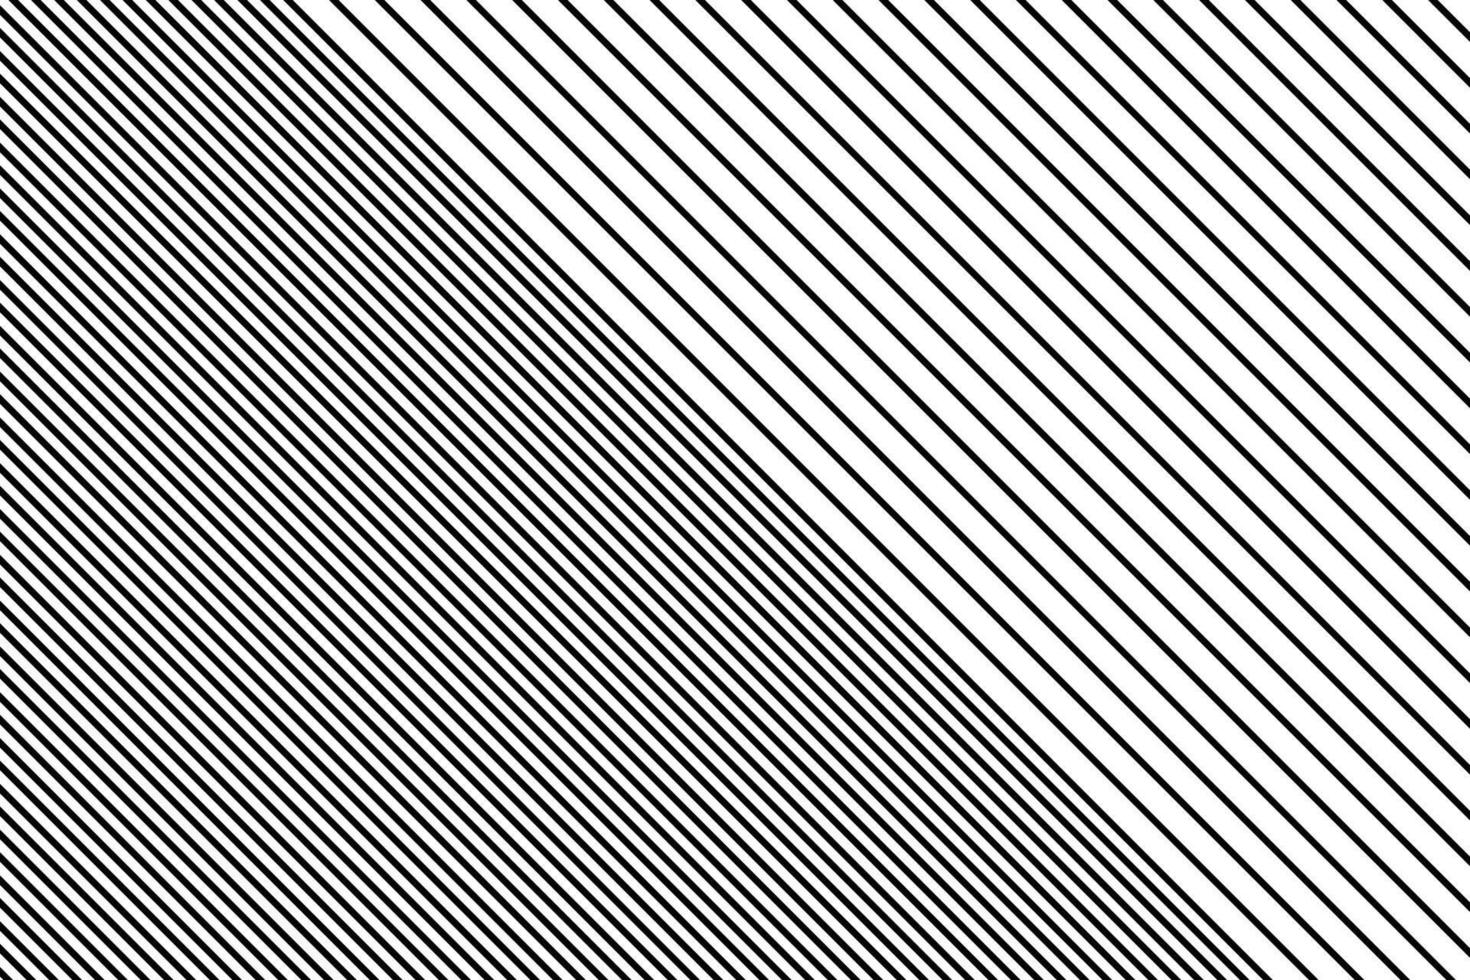 abstrakt diagonal rader sned kantig vektor mönster.